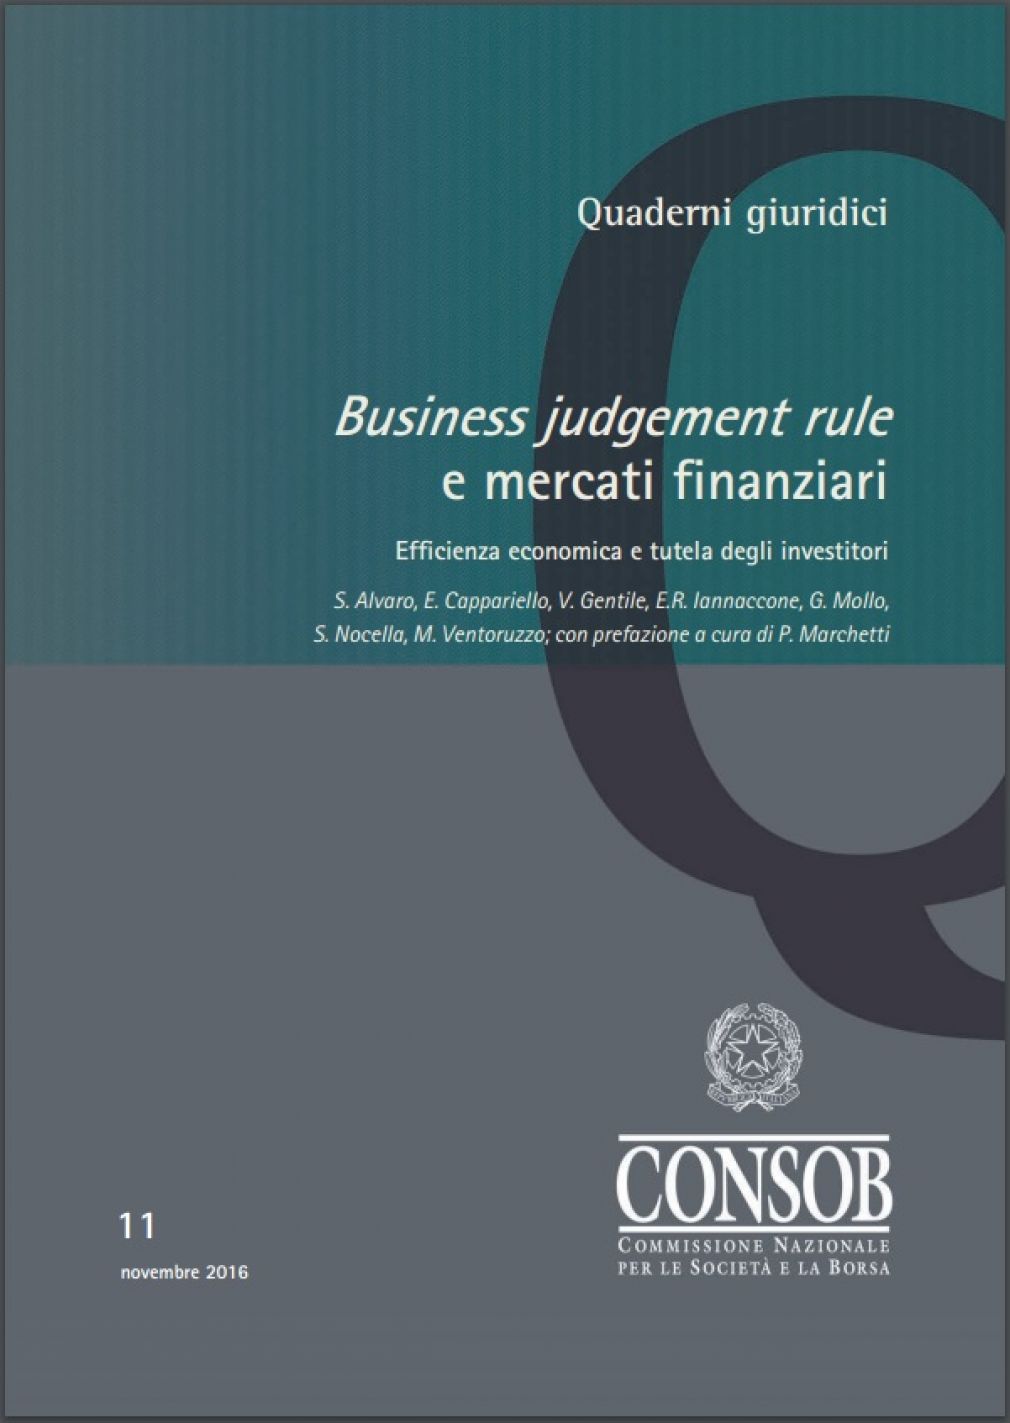 Quaderno giuridico Consob su Business judgement rule e mercati finanziari